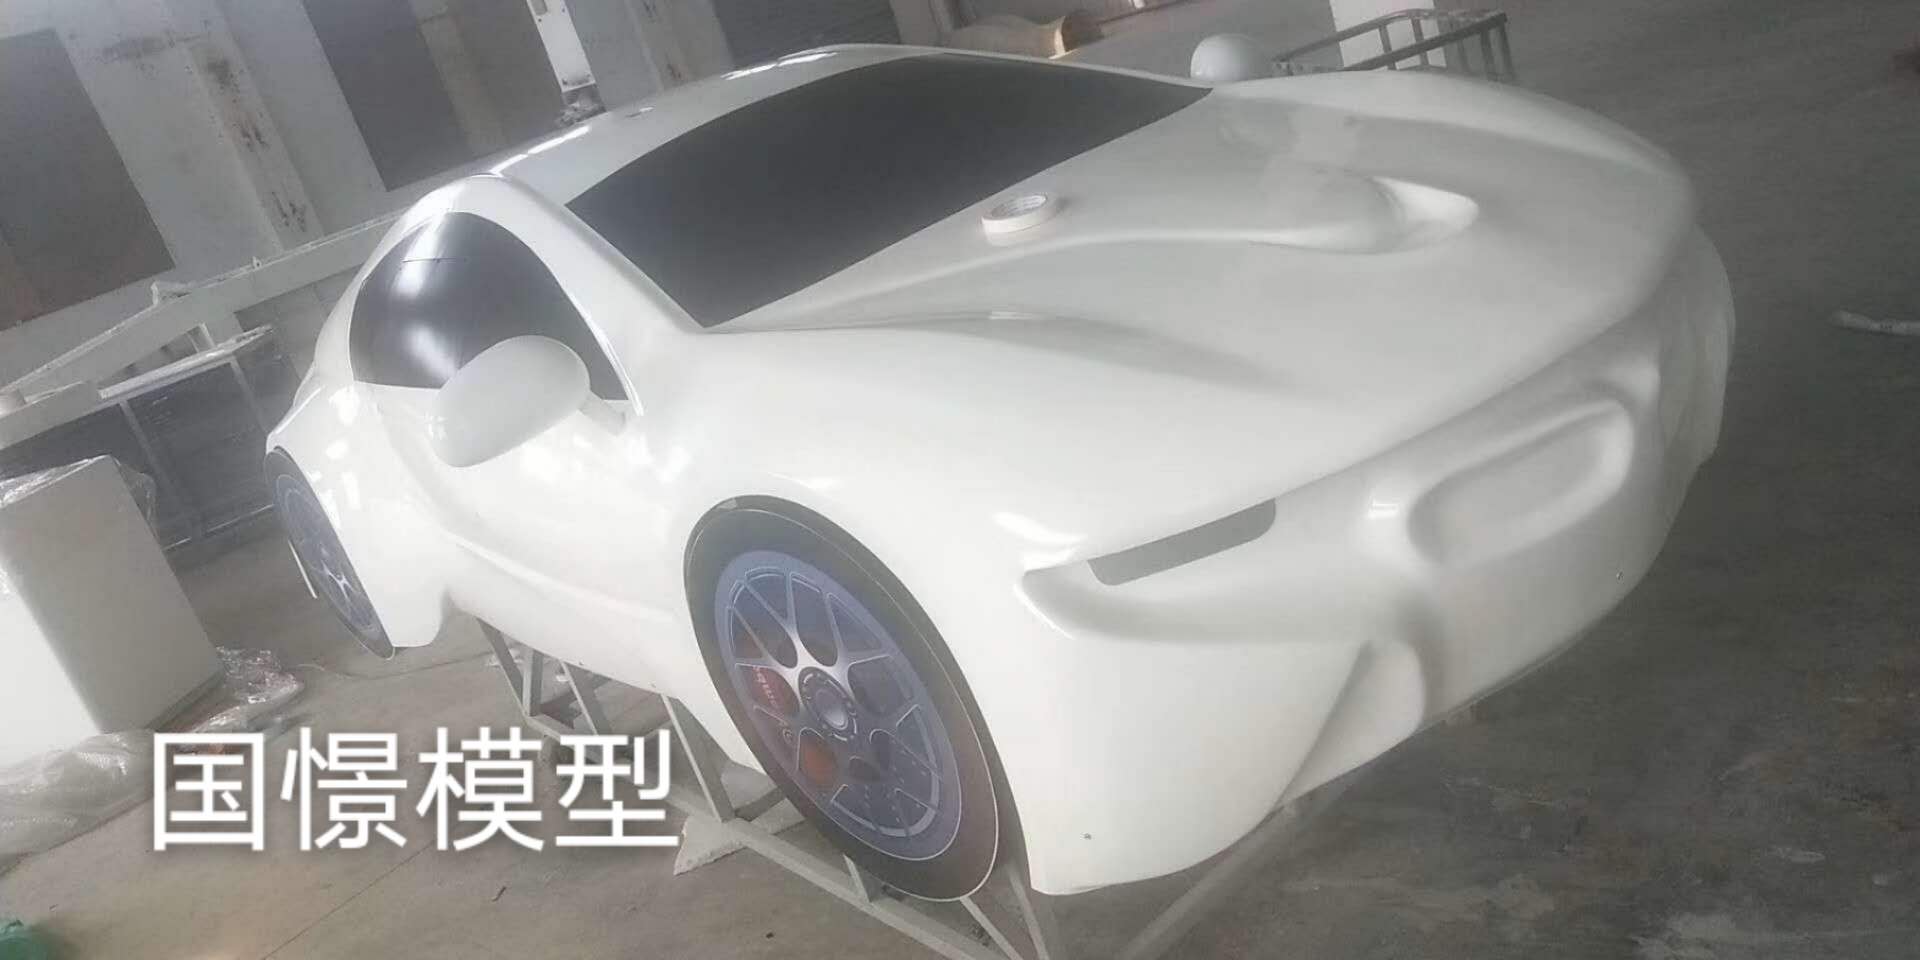 克东县车辆模型